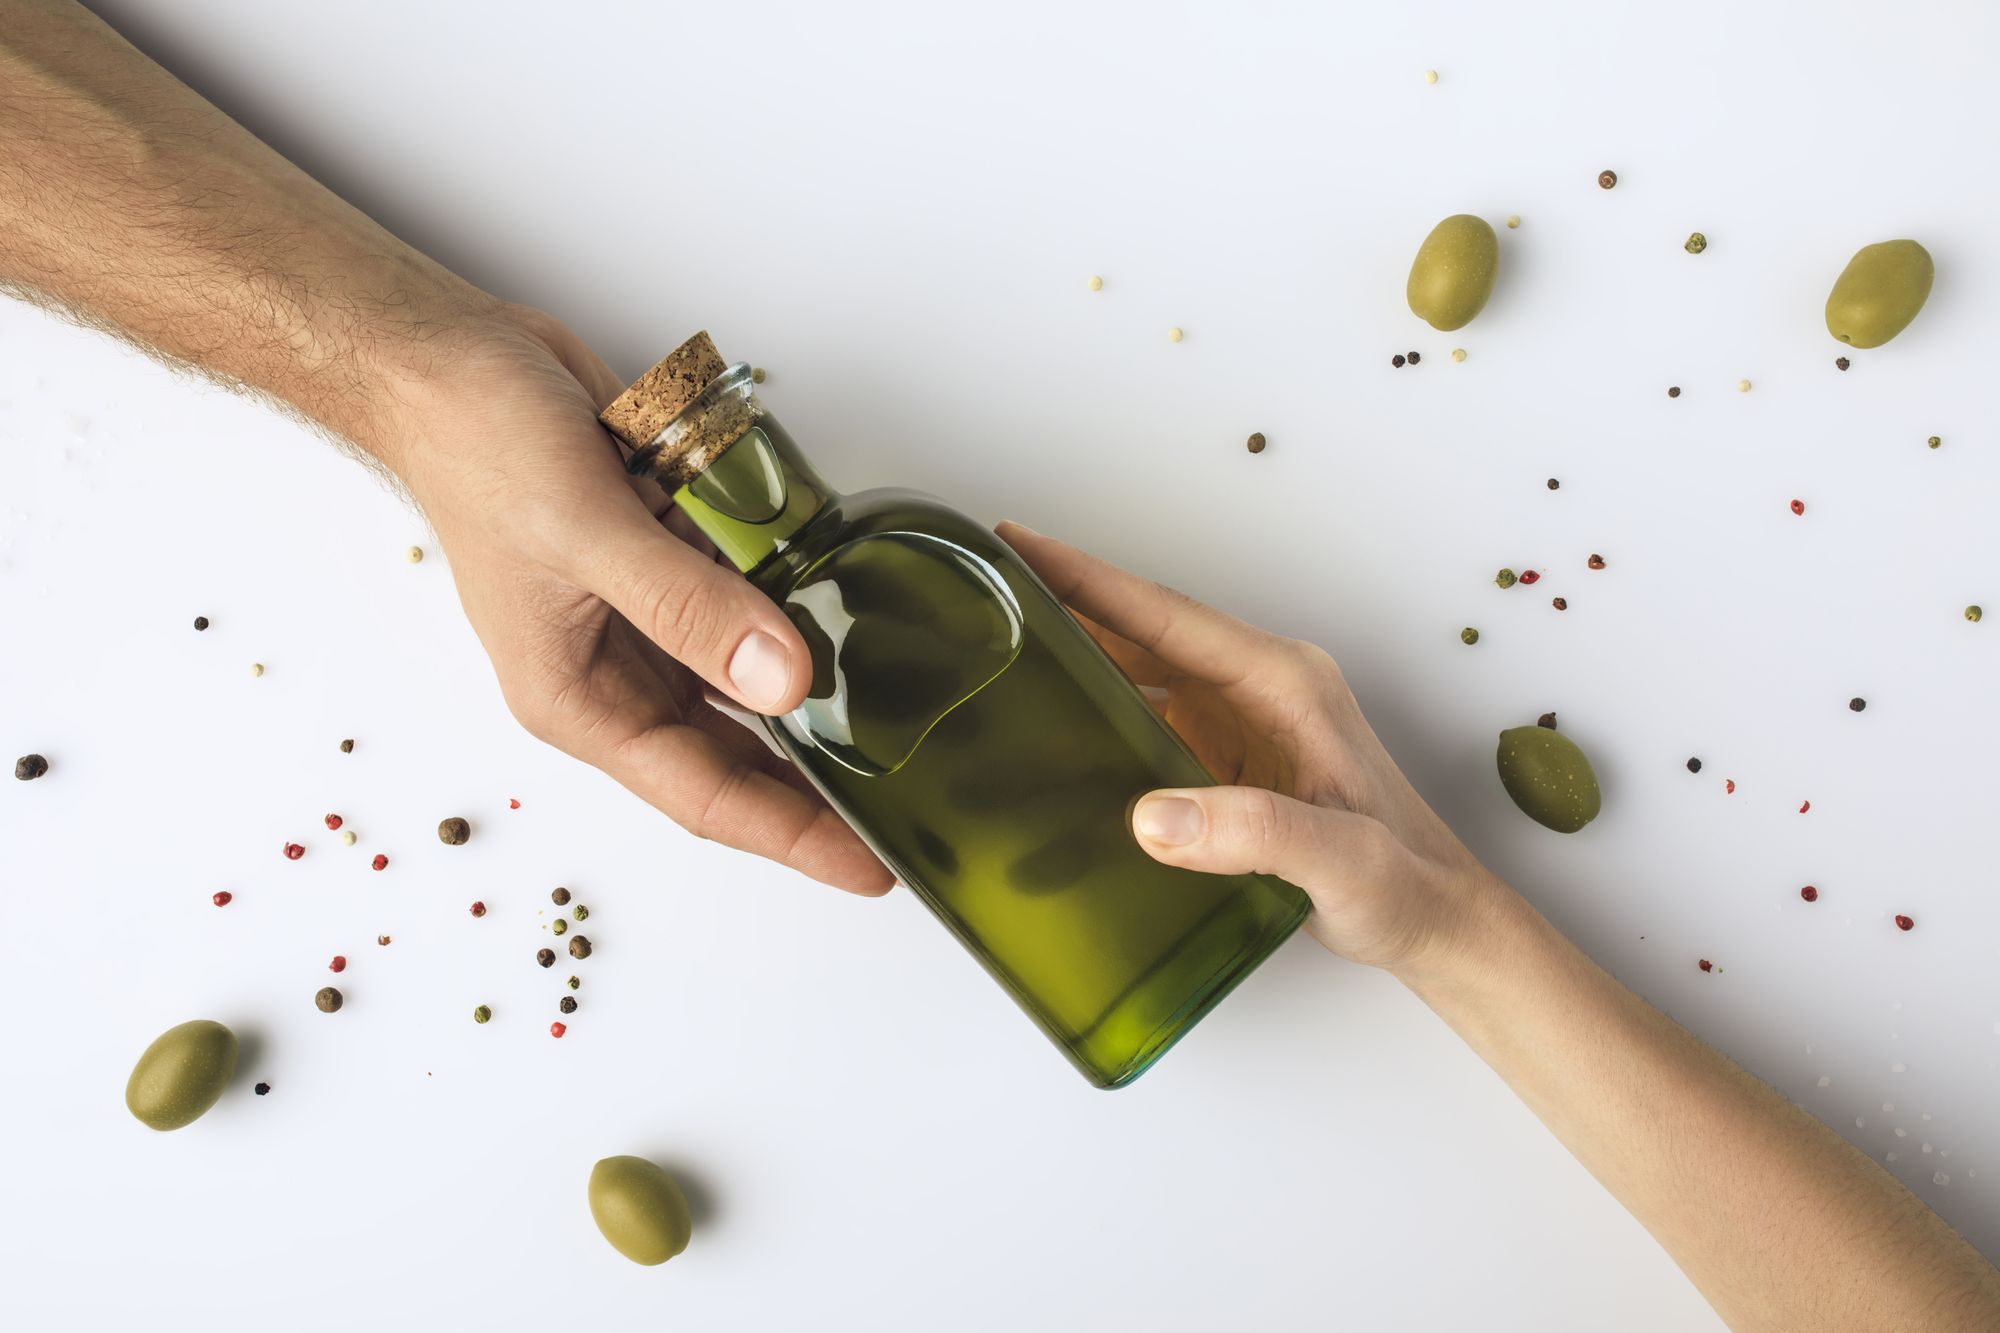 Оливковое масло замерзло в холодильнике. Оливковое масло. Бутылка оливкового масла. Бутылка в руке. Стеклянная бутылка в руке.